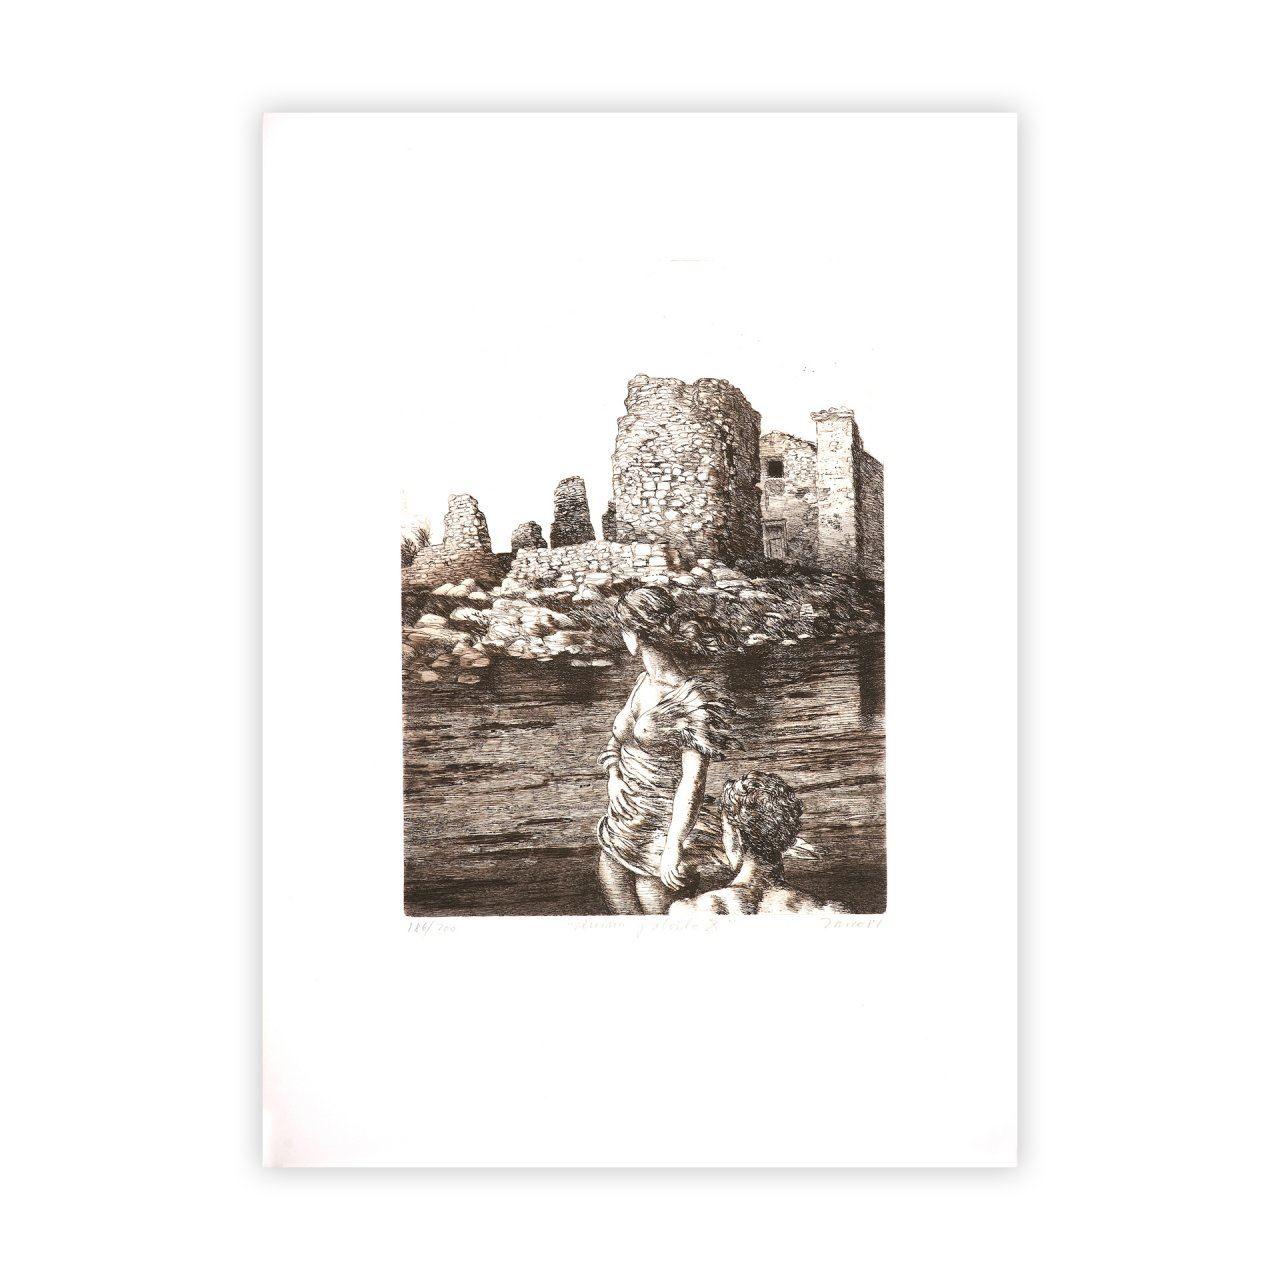 Antonio Zarco (Espagne, 1930-2018)
Ruina y olvido X", 1981
gravure sur papier
20.9 x 15 in. (53 x 38 cm)
Edition de 200
ID : ZAR1187-003-200
Signé par l'auteur